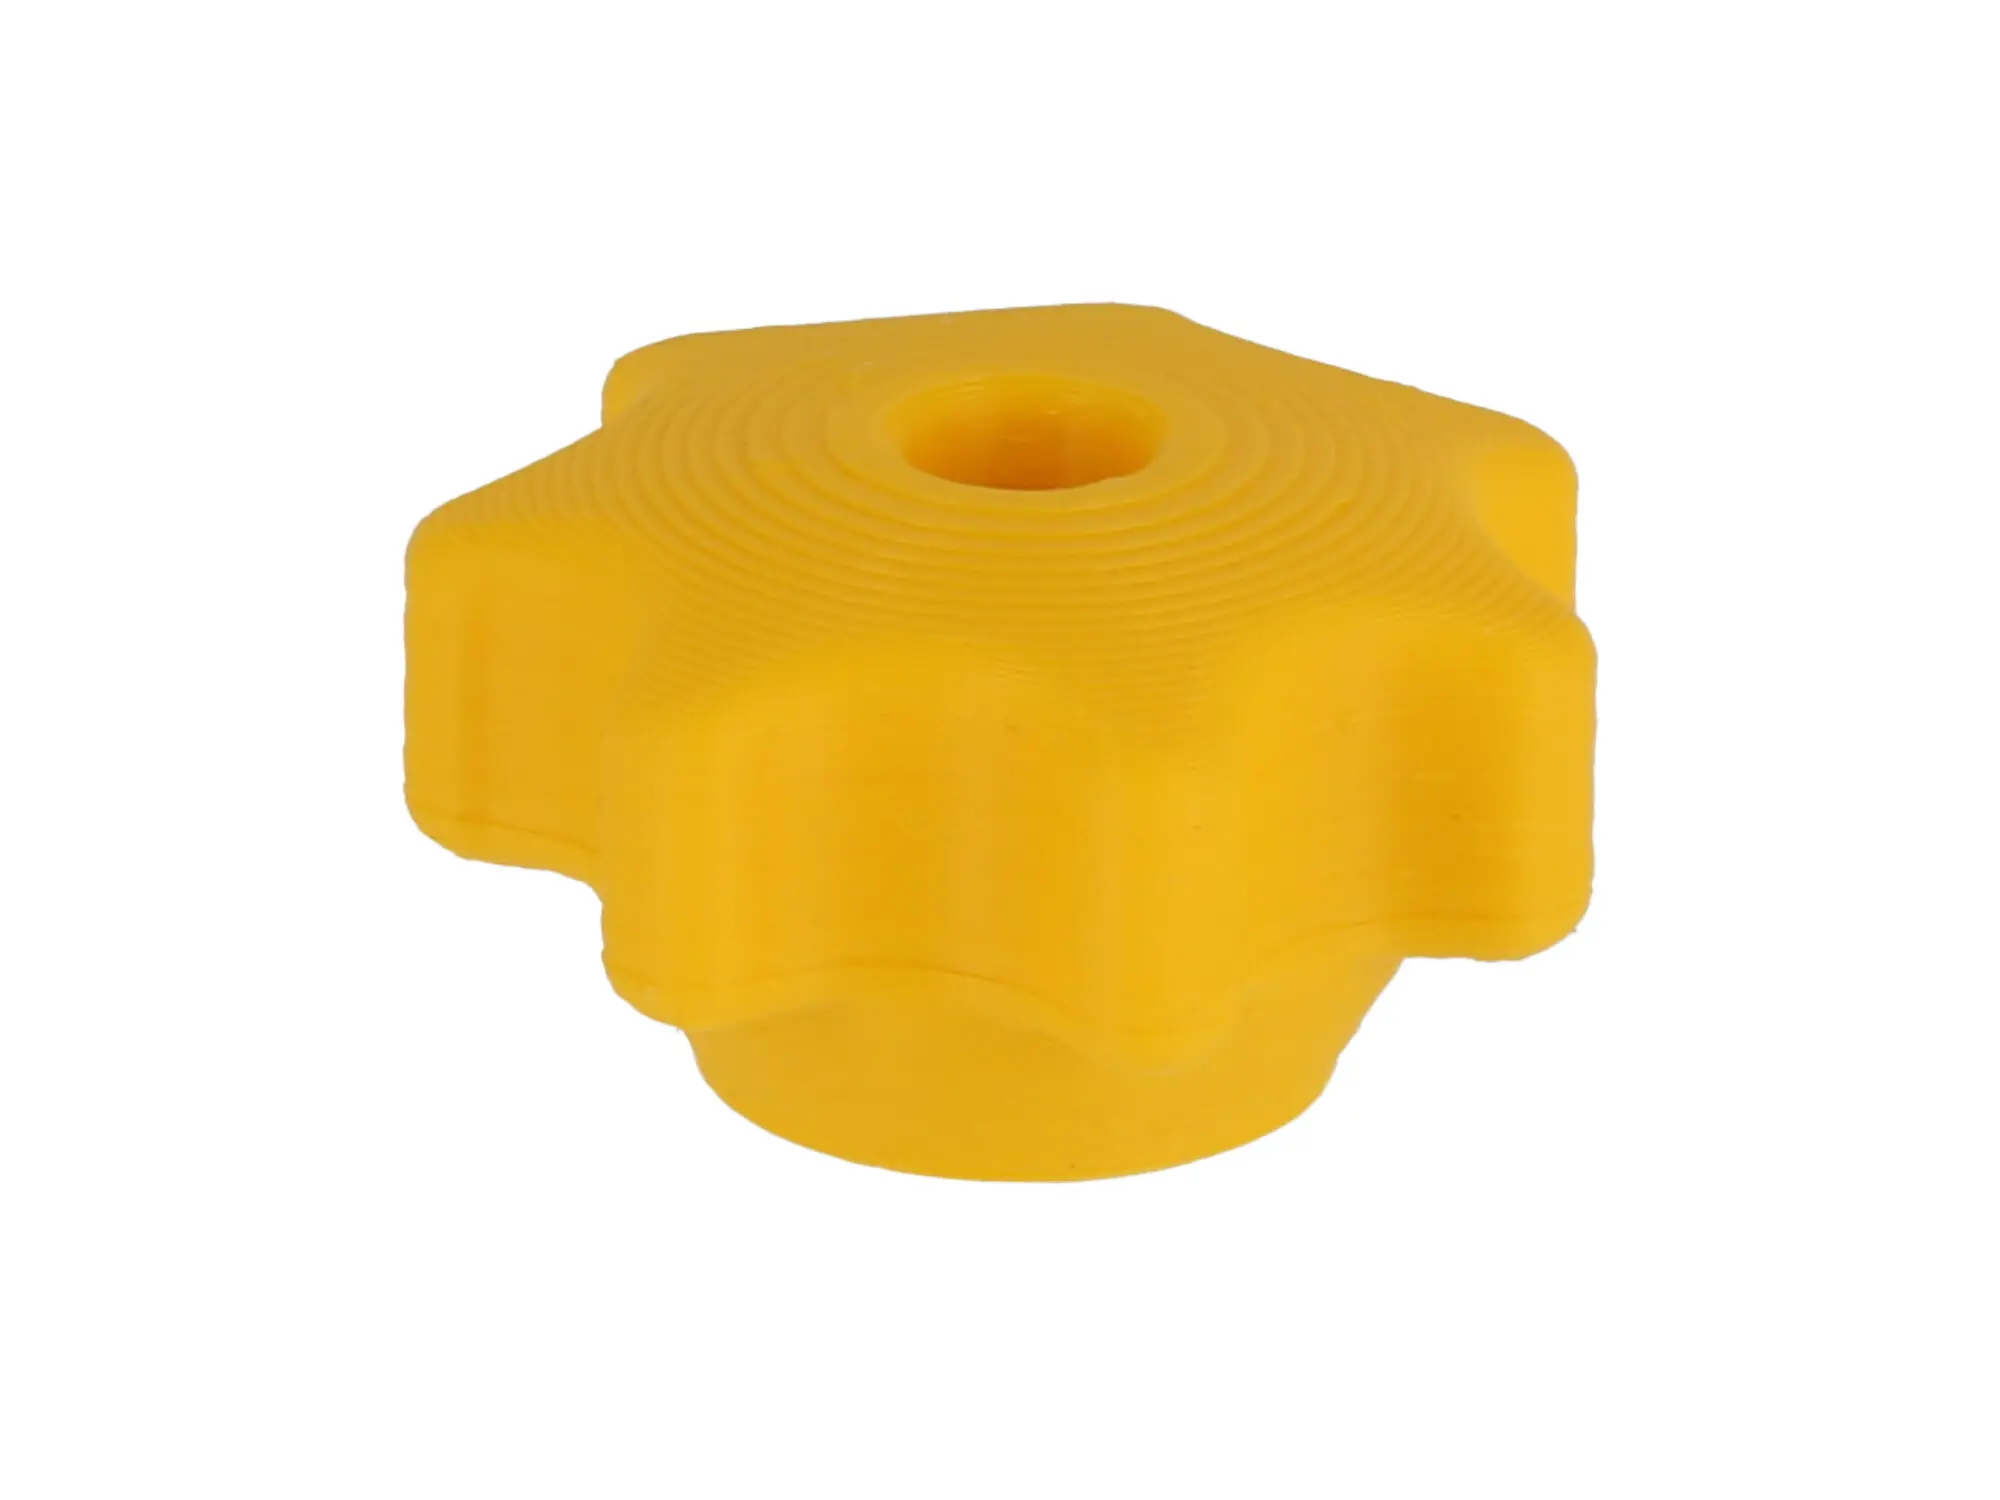 Sterngriffmutter 3D, Gelb, für Motorabdeckung und Haube - für Simson KR51, SR4, SR50, SR80, Art.-Nr.: 10070931 - Bild 1